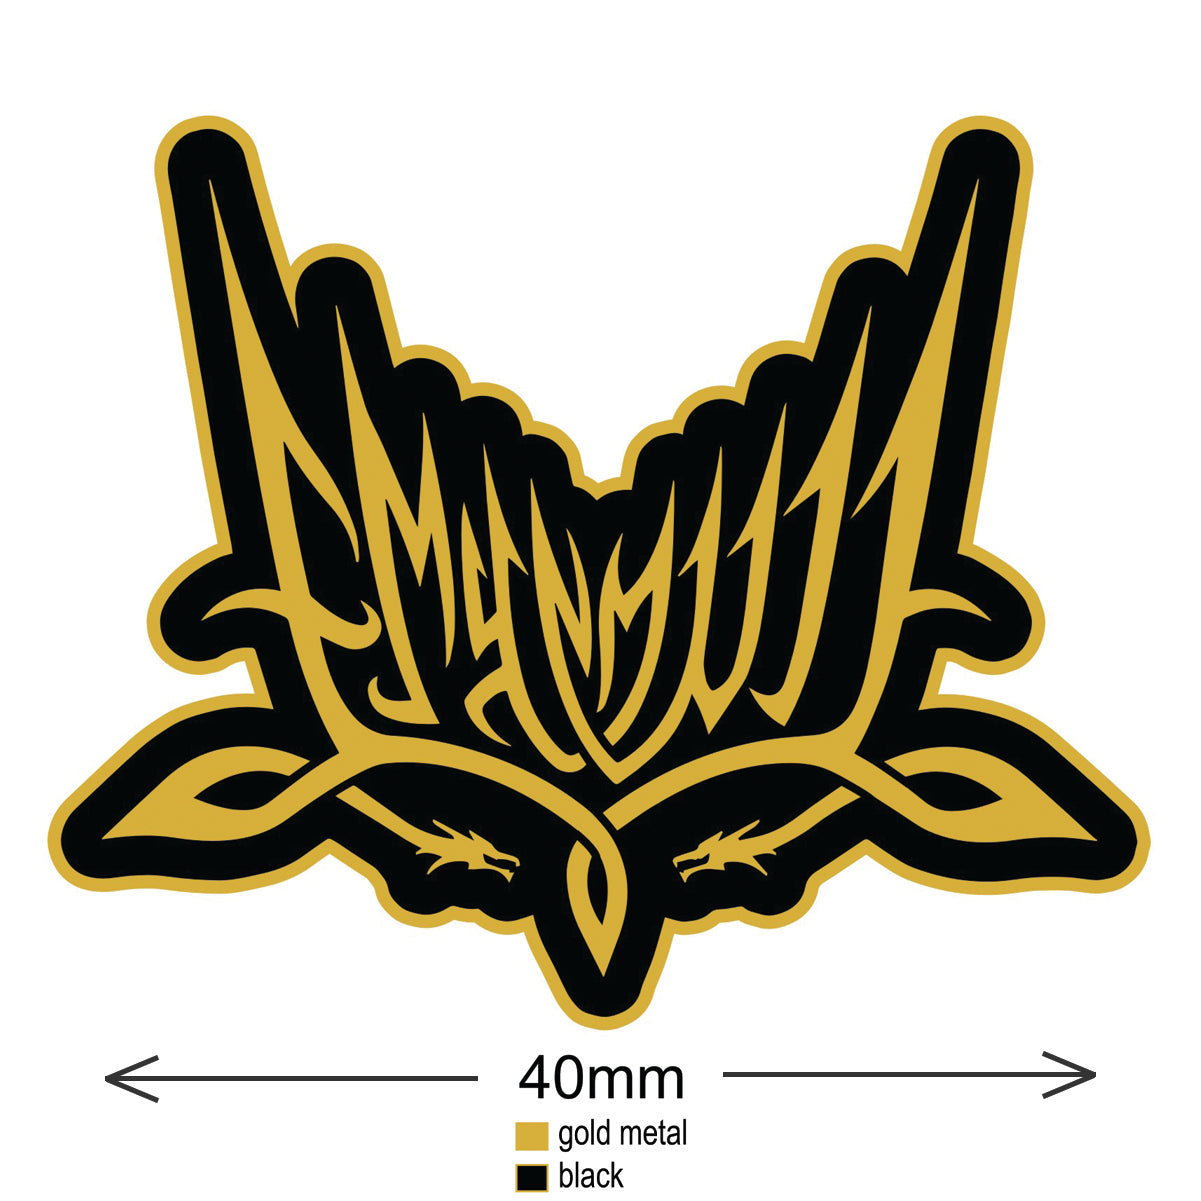 [SOLD OUT] EMYN MUIL "Gold Logo" Metal Enamel Pin